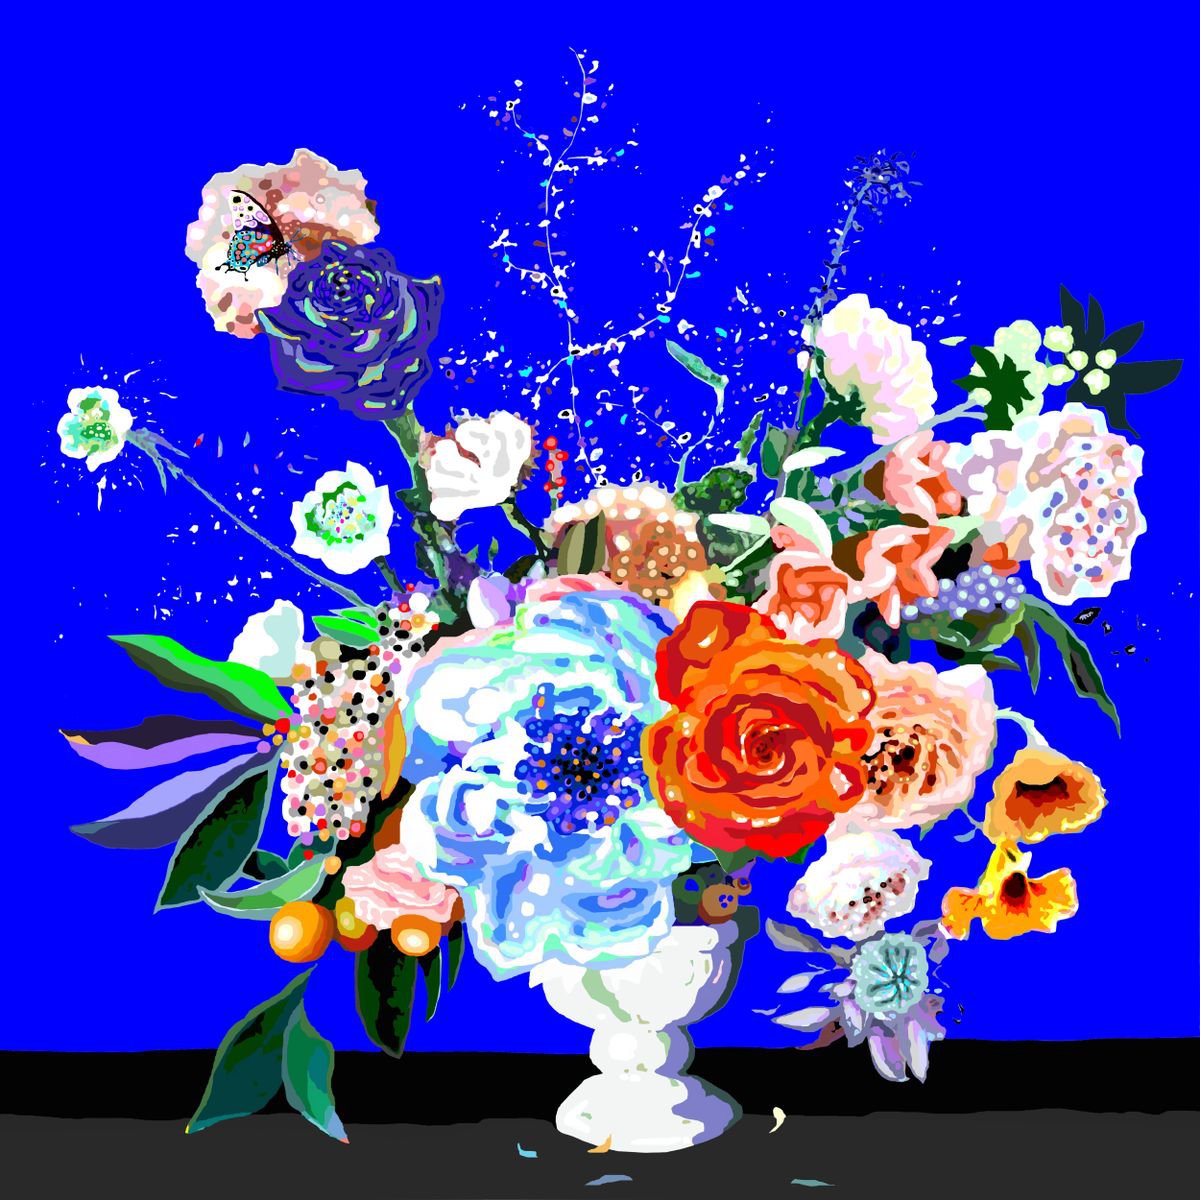 Flowers II/ Flores II (pop art, floral) by Alejos